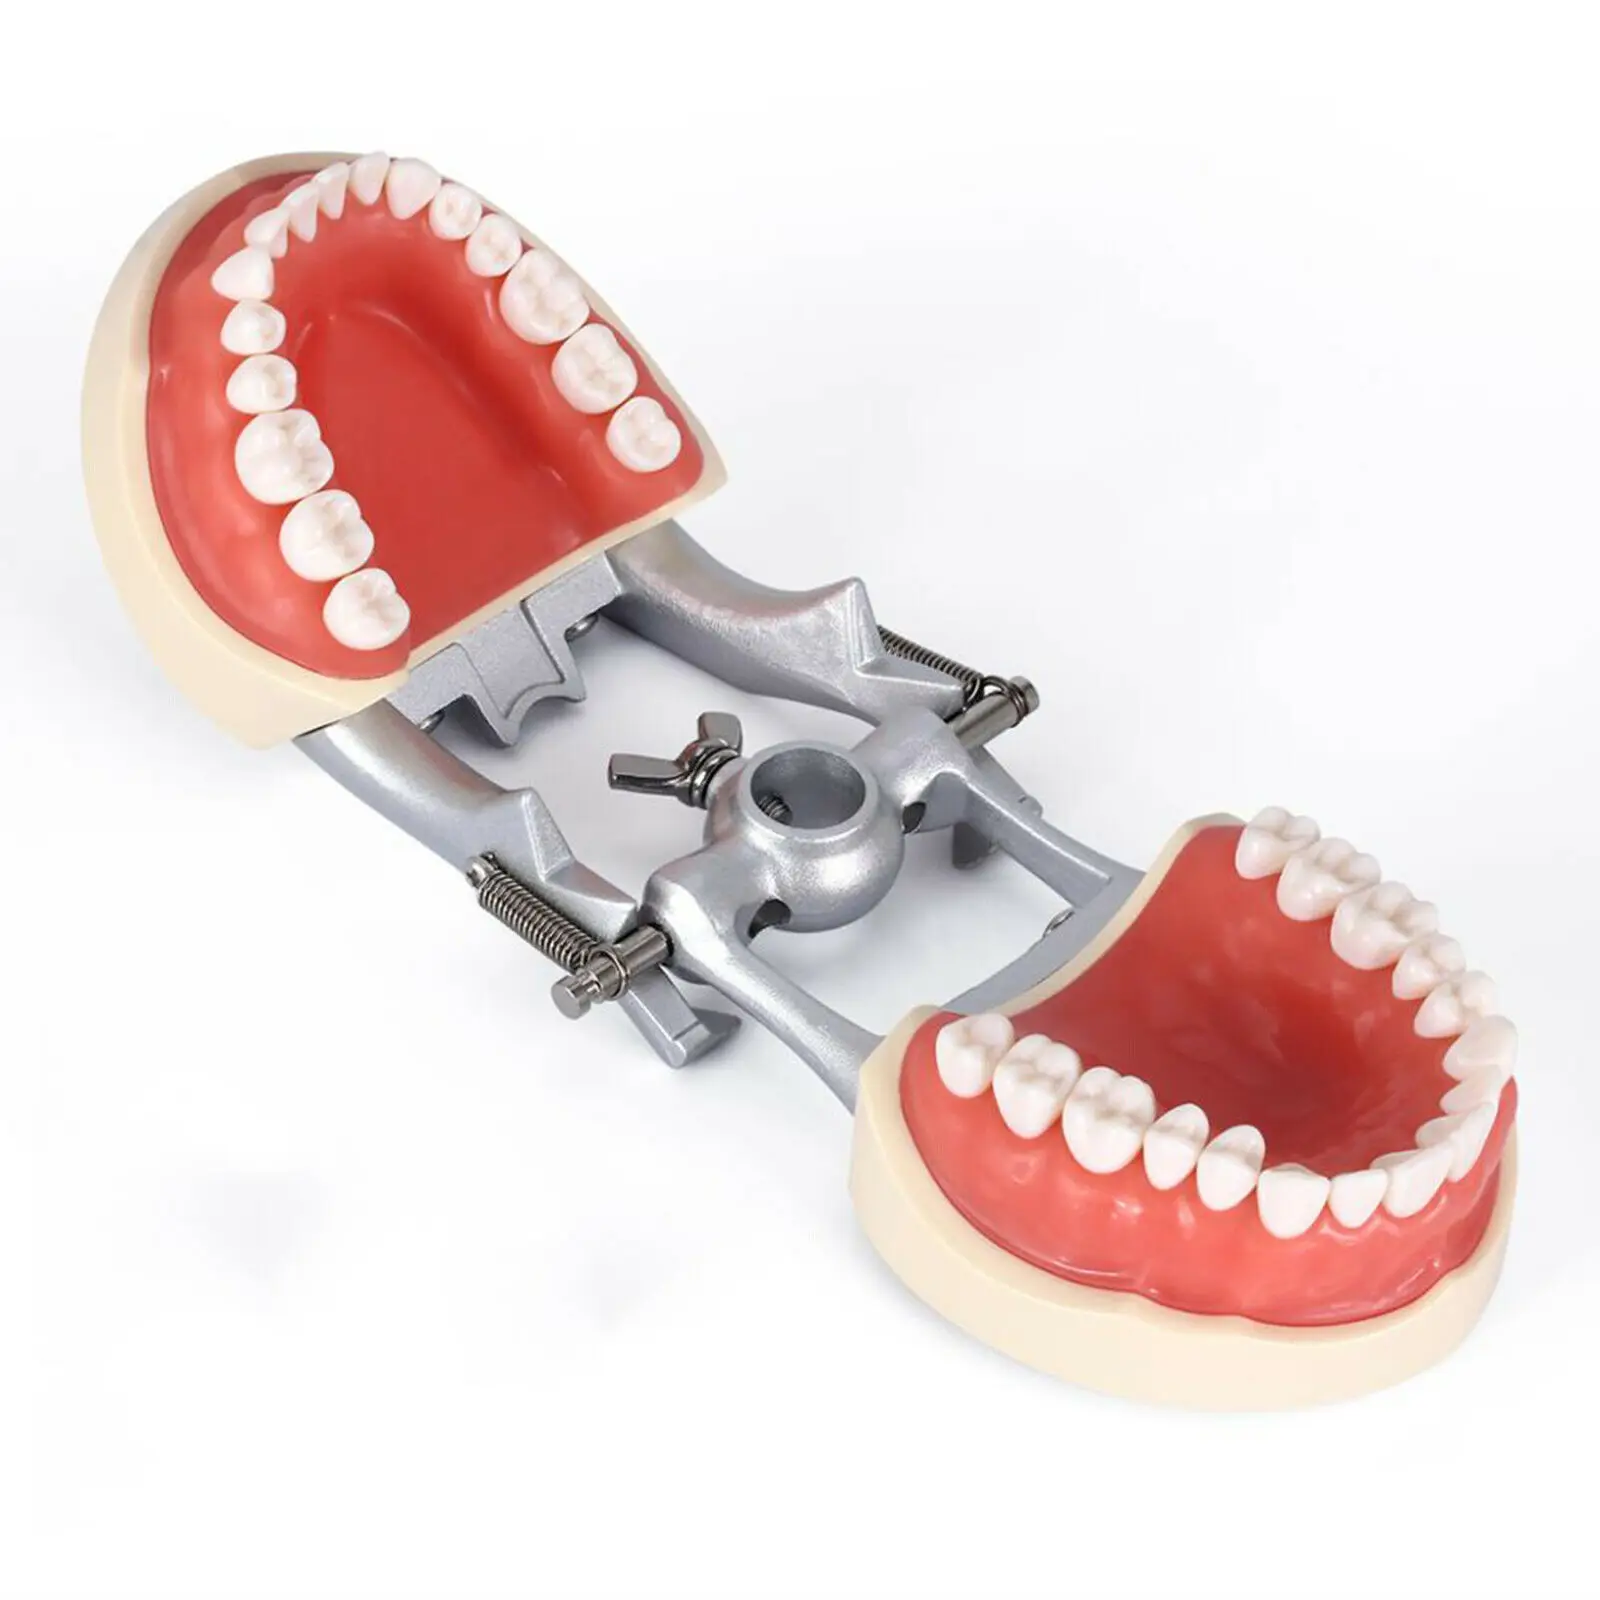 kilgore nissin tipo dental typodon modelo dentes de preparação removível pça demonstração dental modelo odontologia accesorios